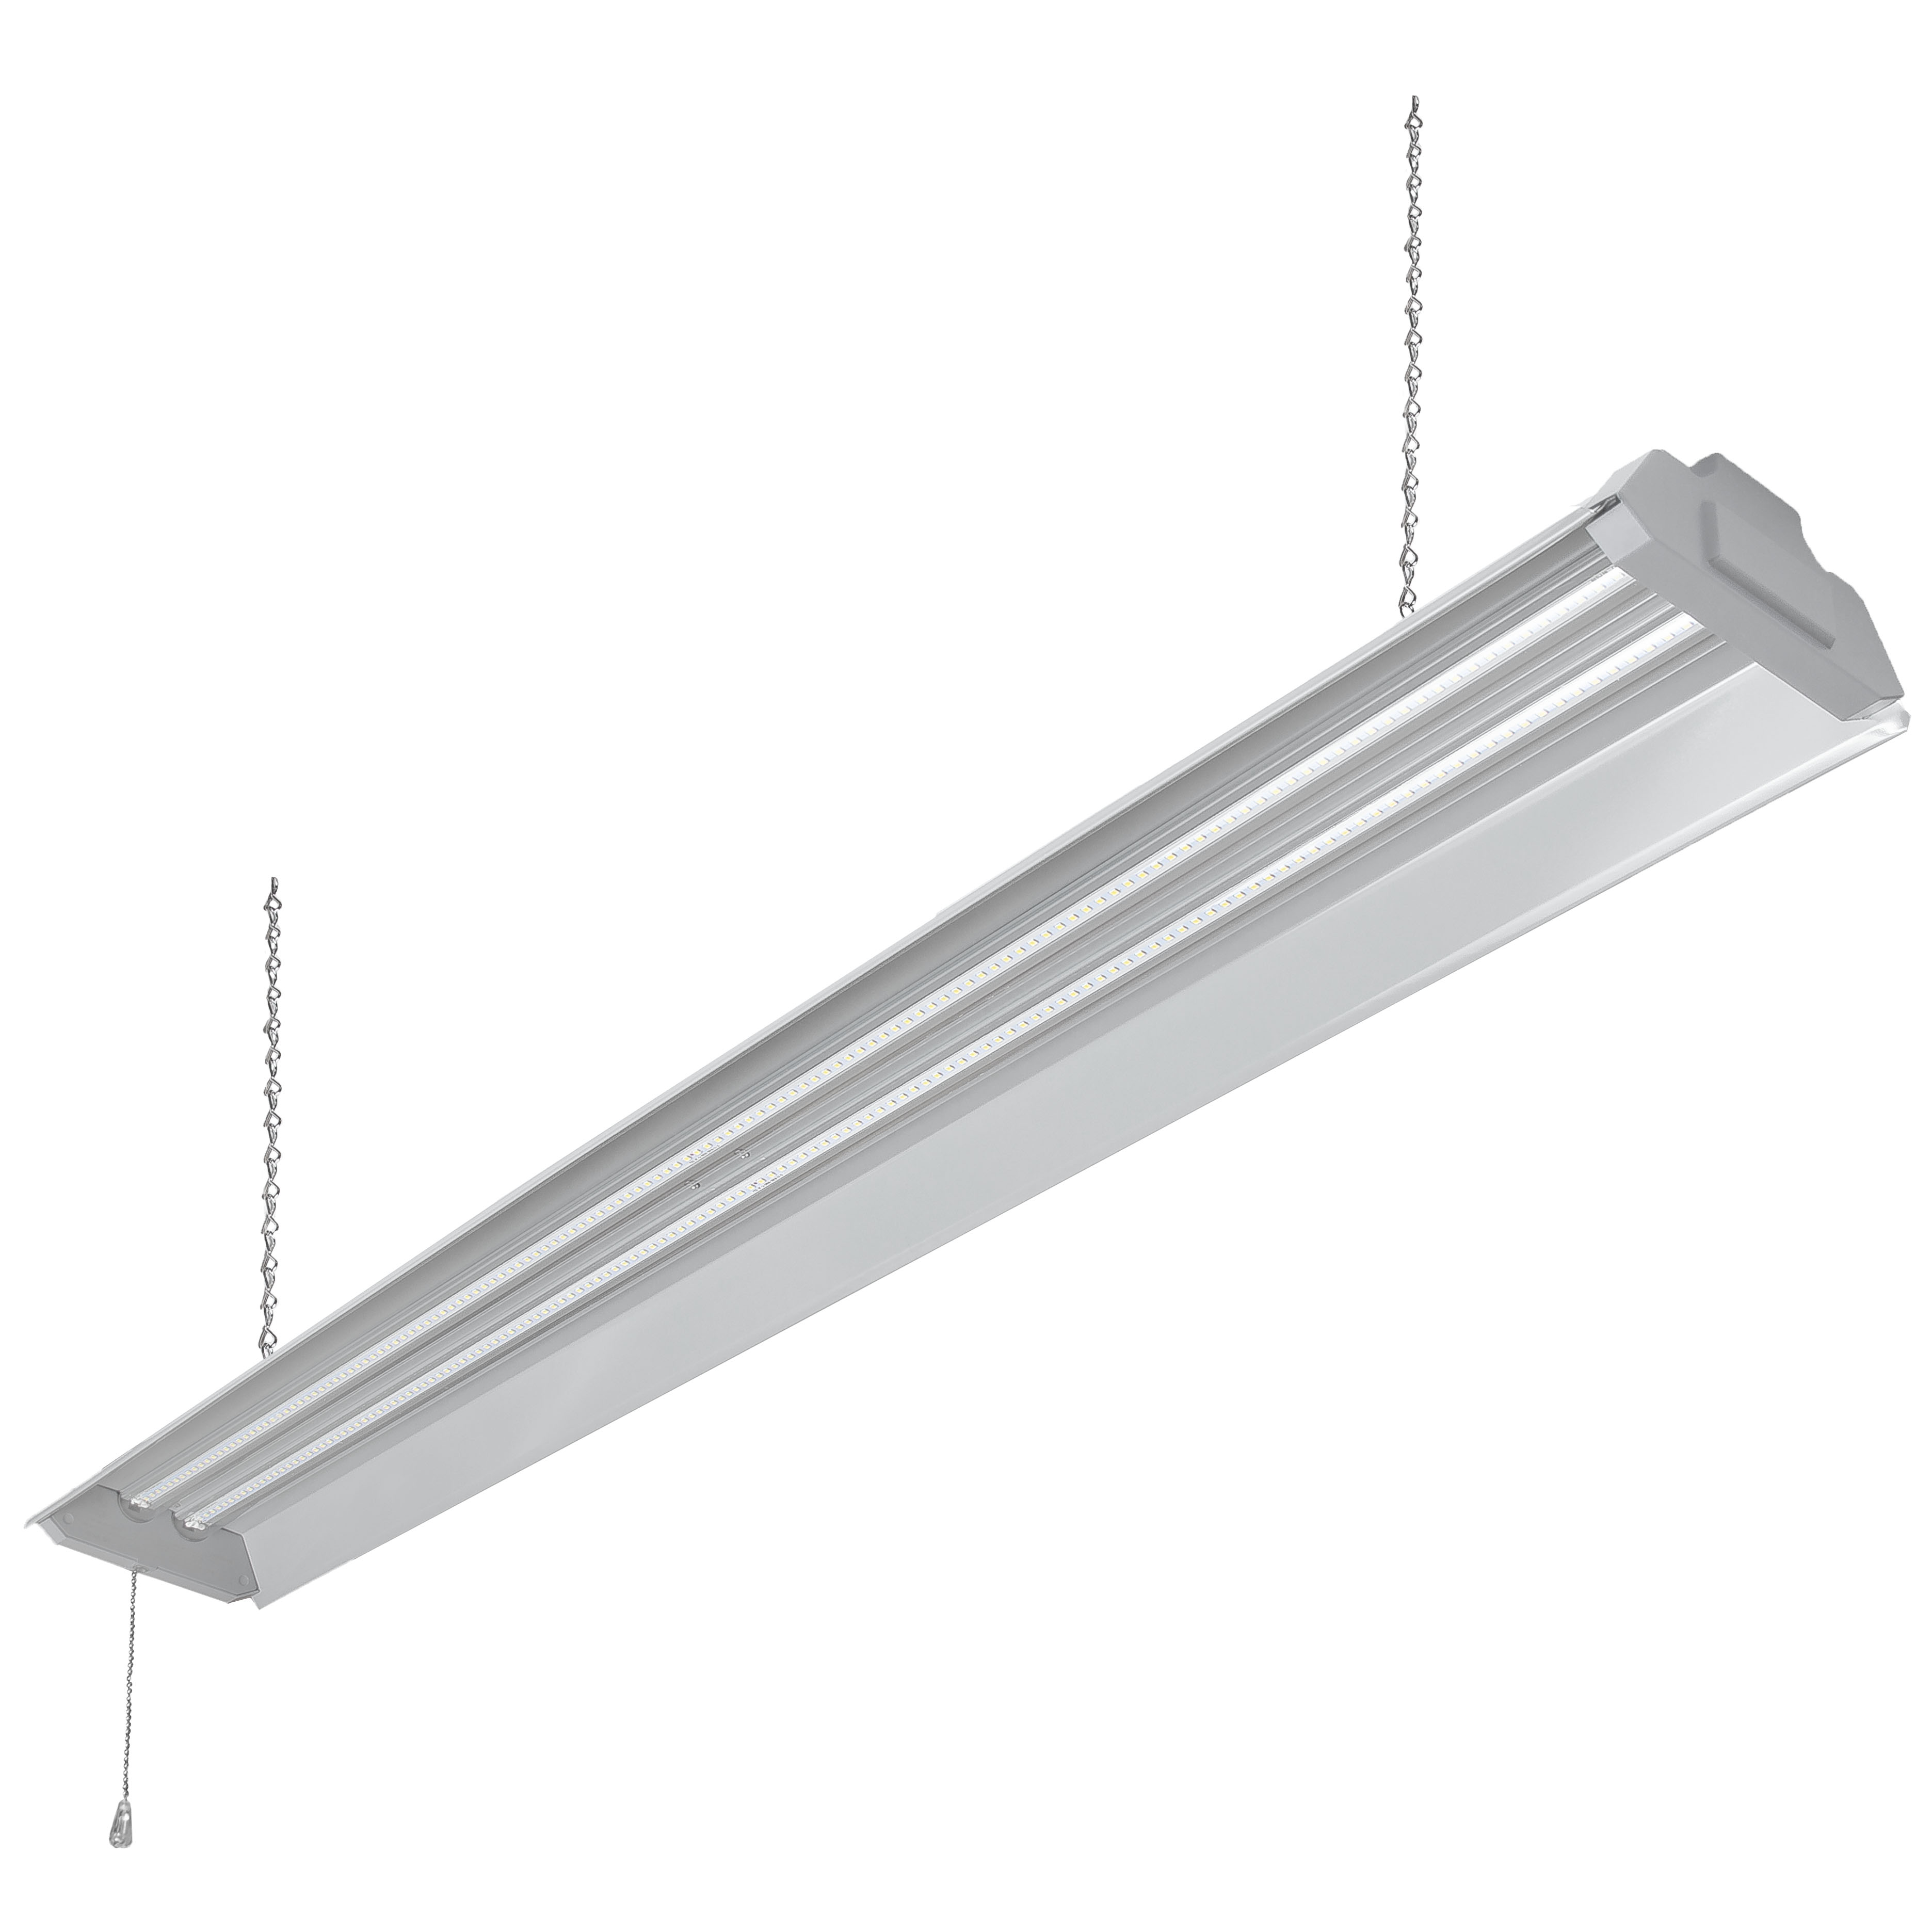 Hyper Tough 4 ft Steel, 5000 Lumen LED Shop Light, Grey - image 3 of 8